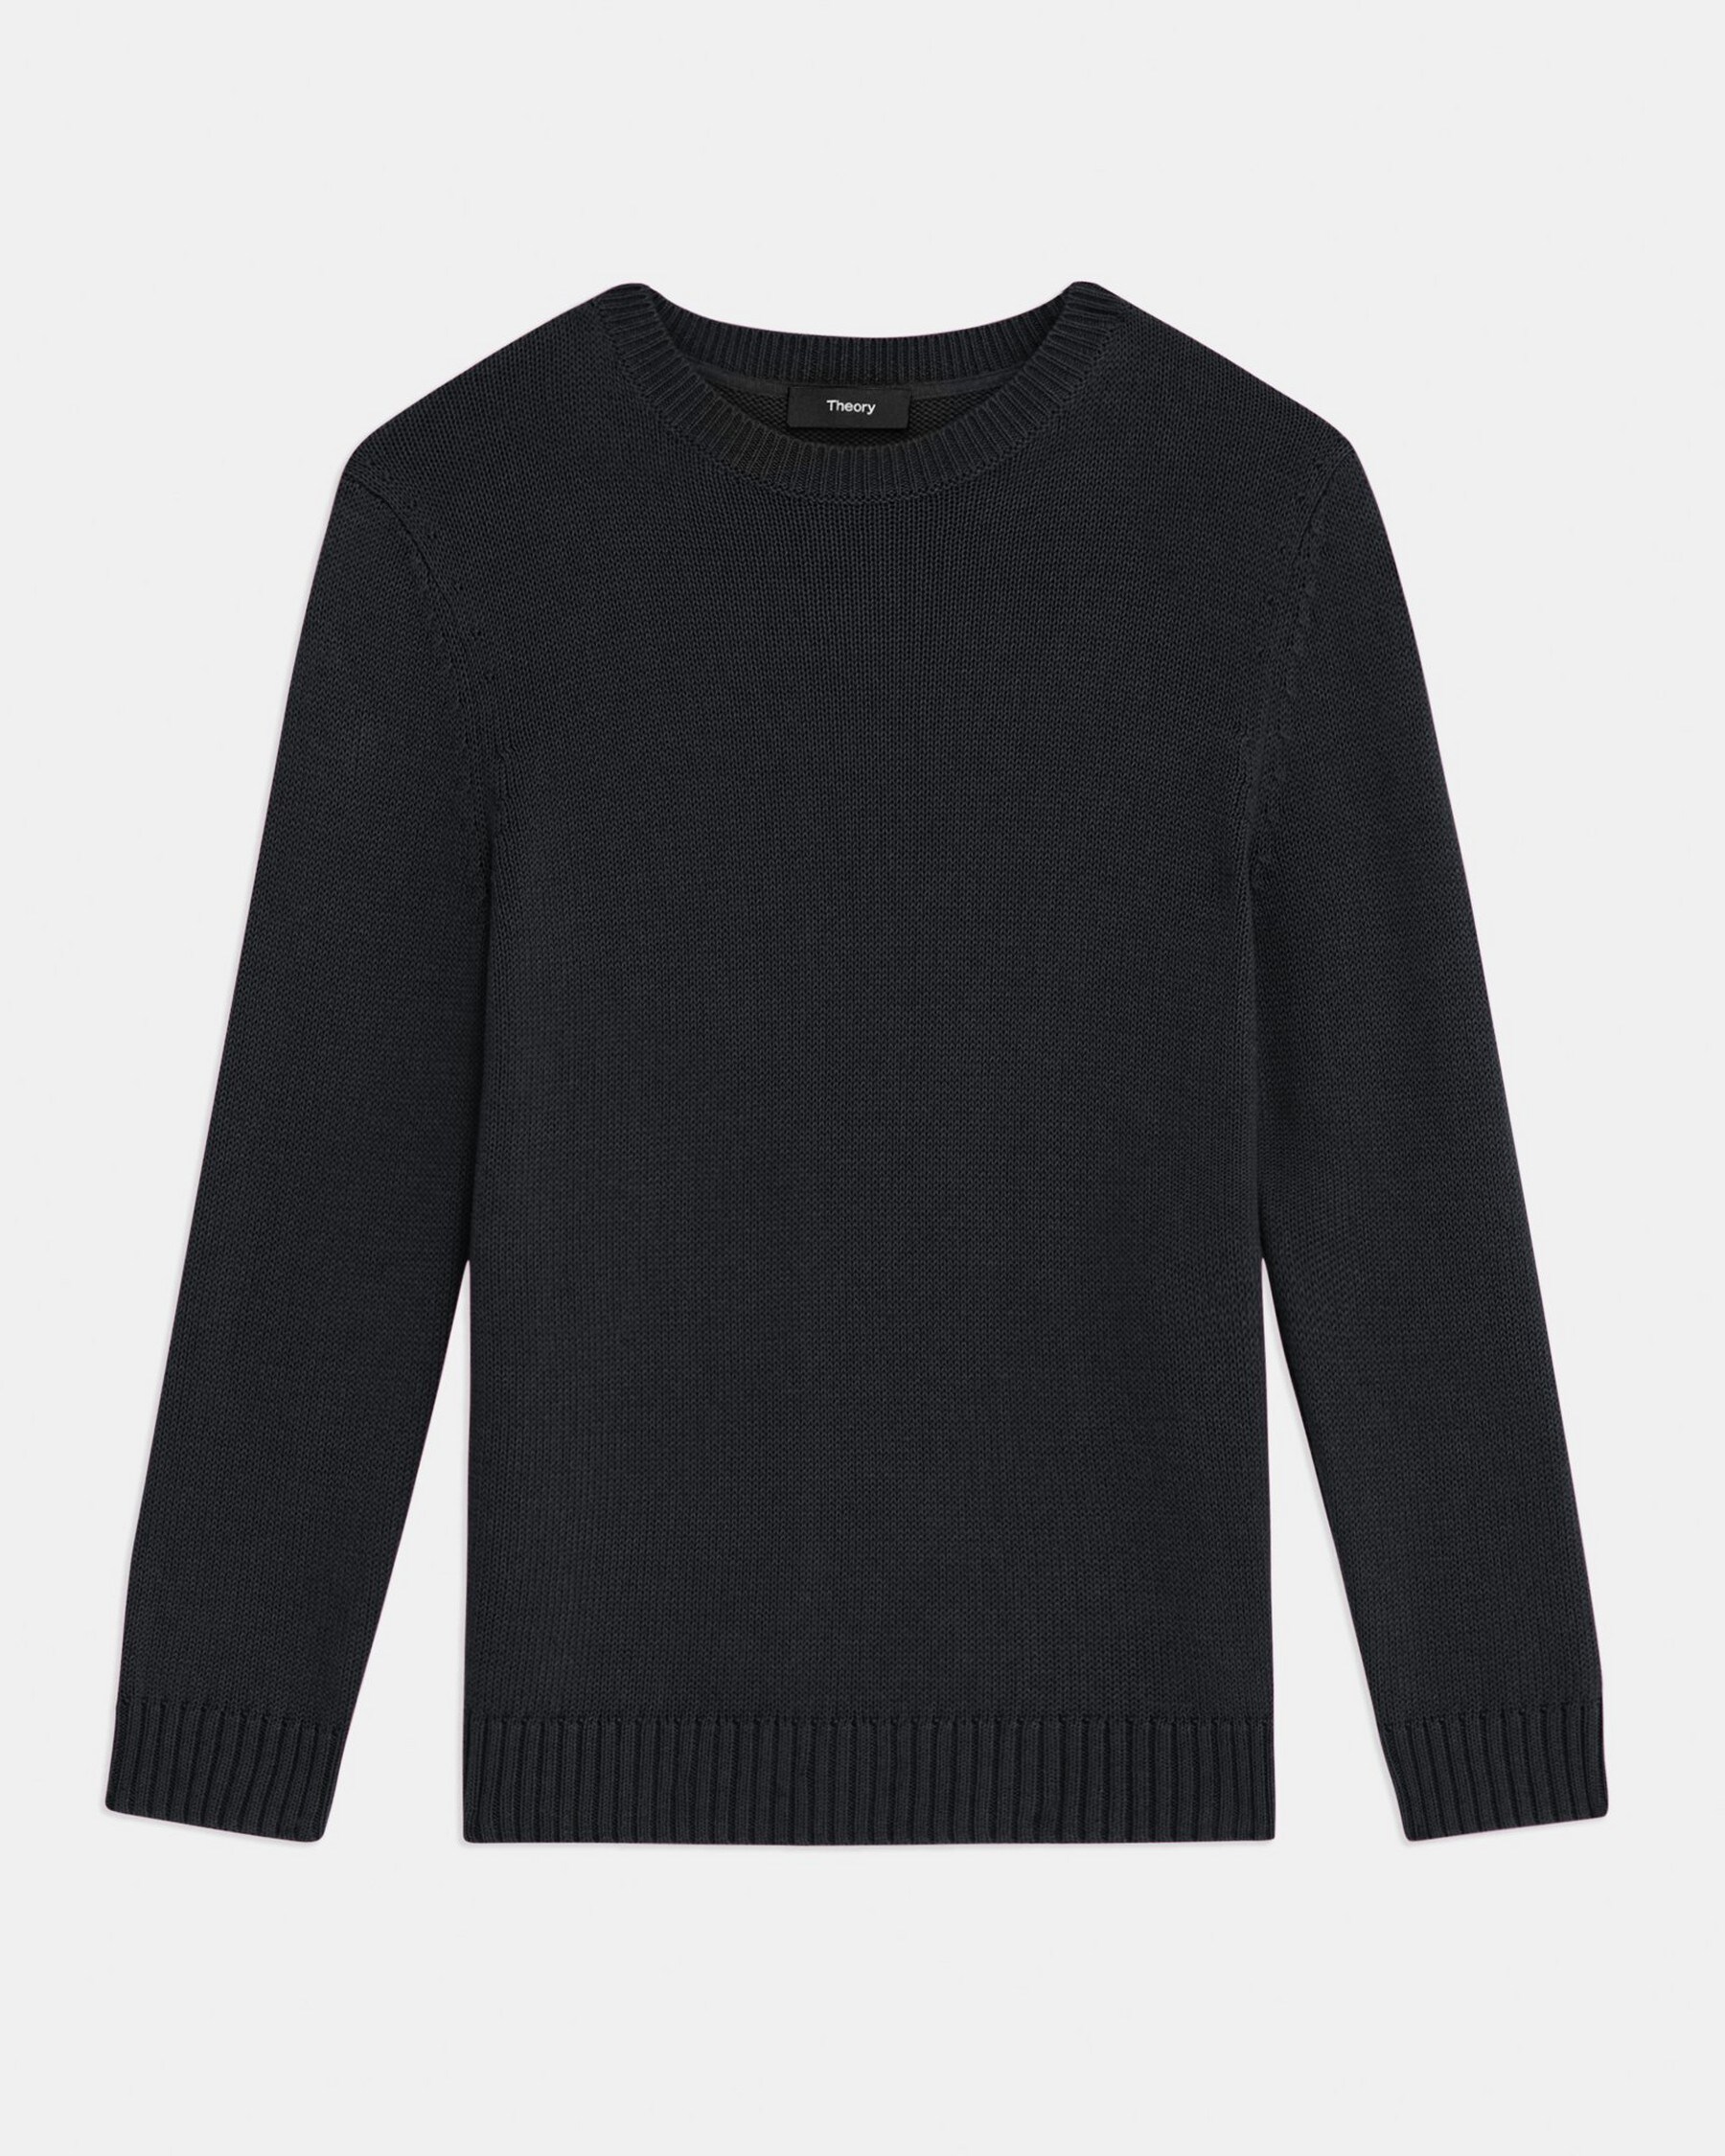 Shrunken Crewneck Sweater in Cotton-Cashmere